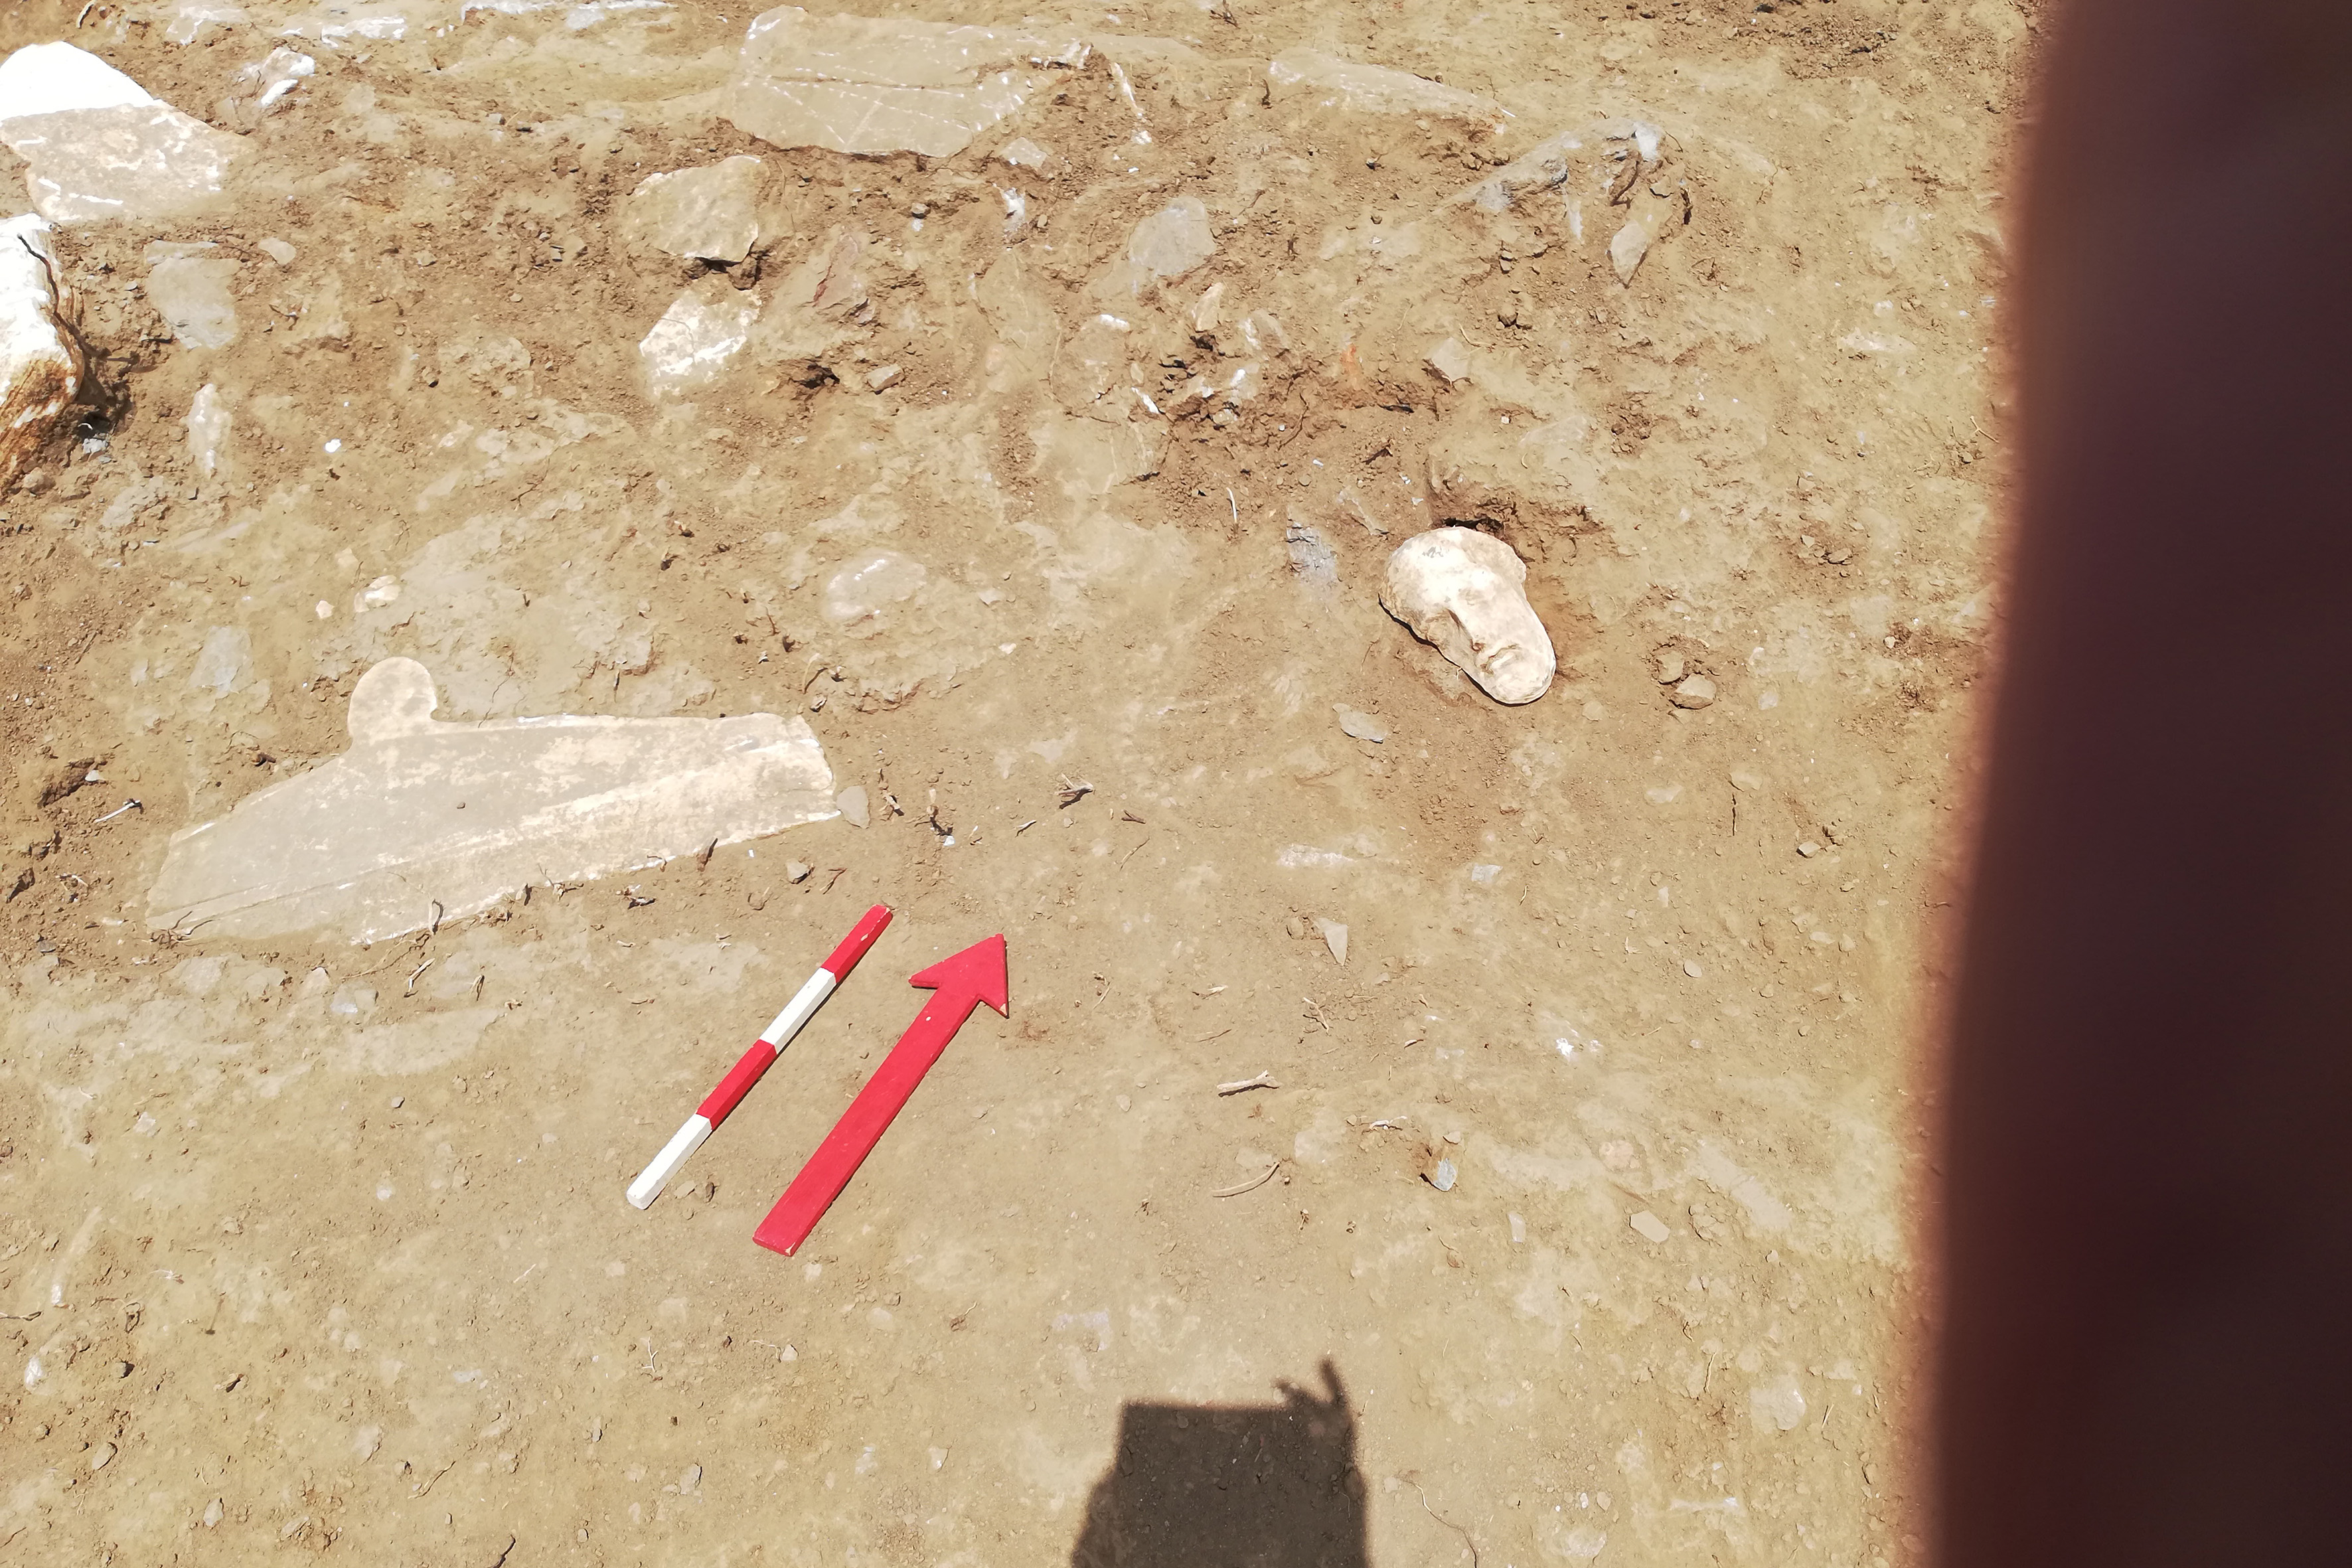 Τήνος: Σπουδαία αρχαιολογική ανακάλυψη! Βρήκαν επιτύμβιες στήλες από την κλασική εποχή! Εντυπωσιακές εικόνες